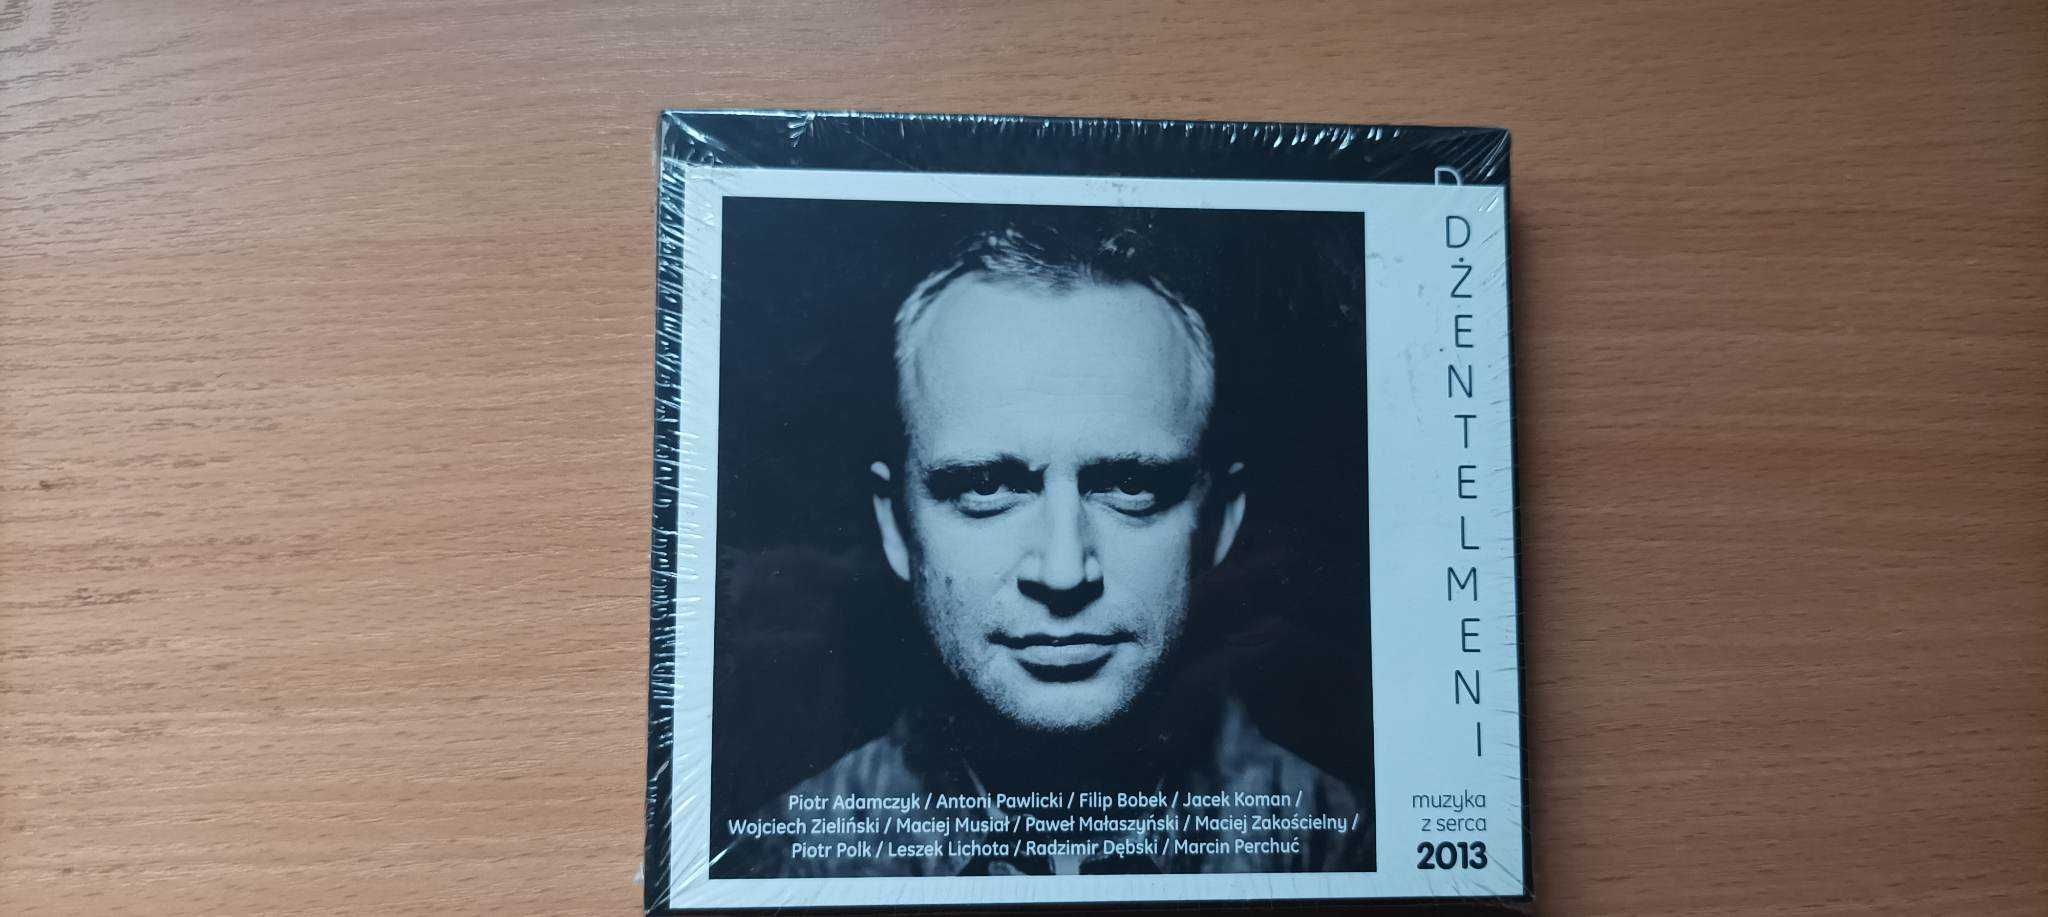 Muzyka z serca Kalendarz dżentelmeni 2013 CD